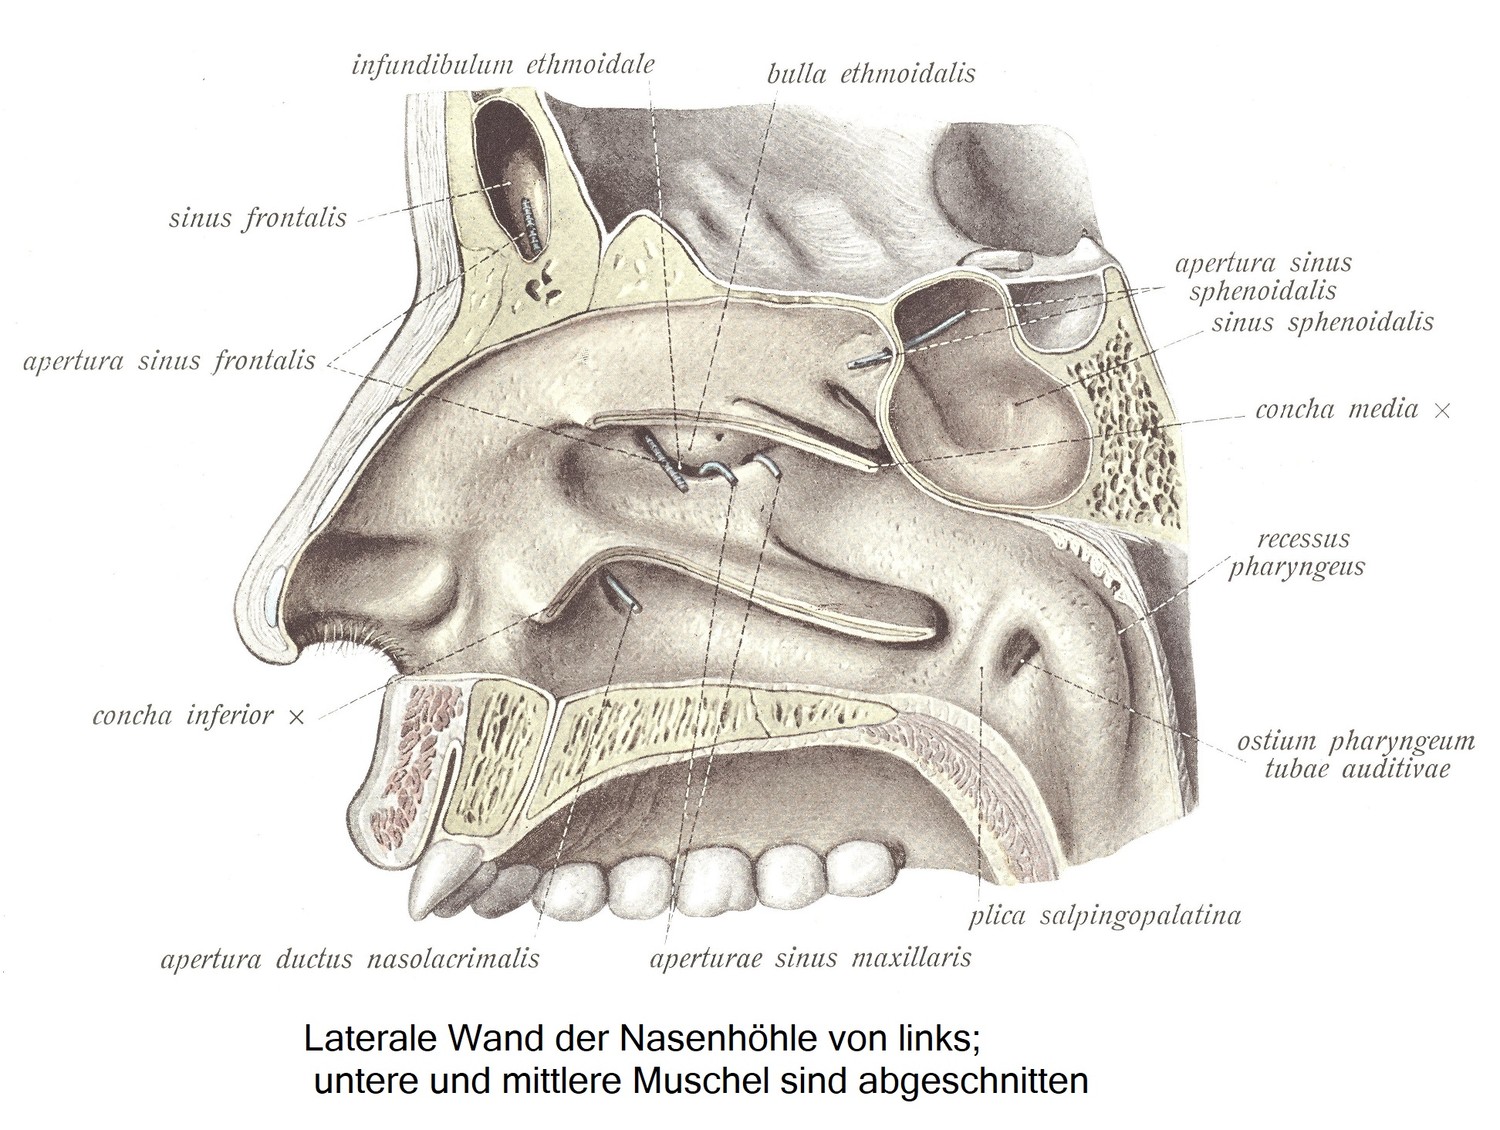 Латеральная стенка полости носа слева; нижняя и средняя раковина срезаны.